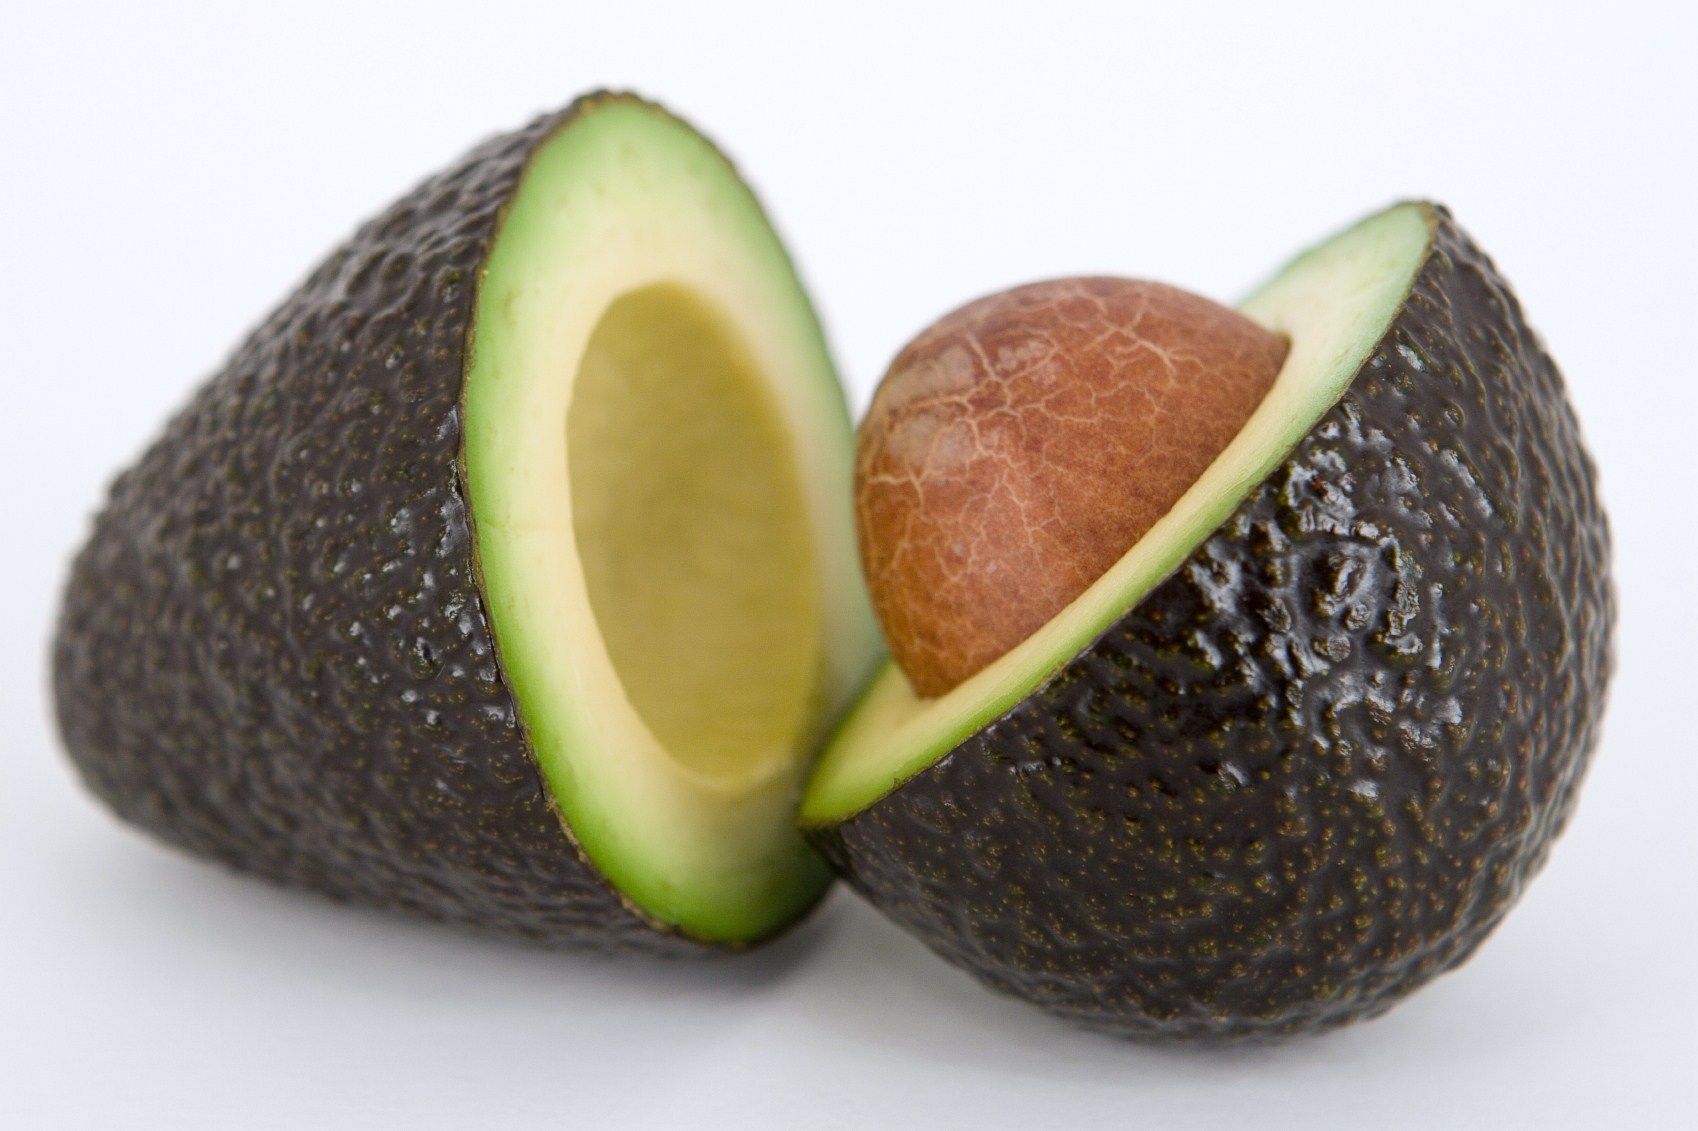 Come funziona la dieta dell’avocado